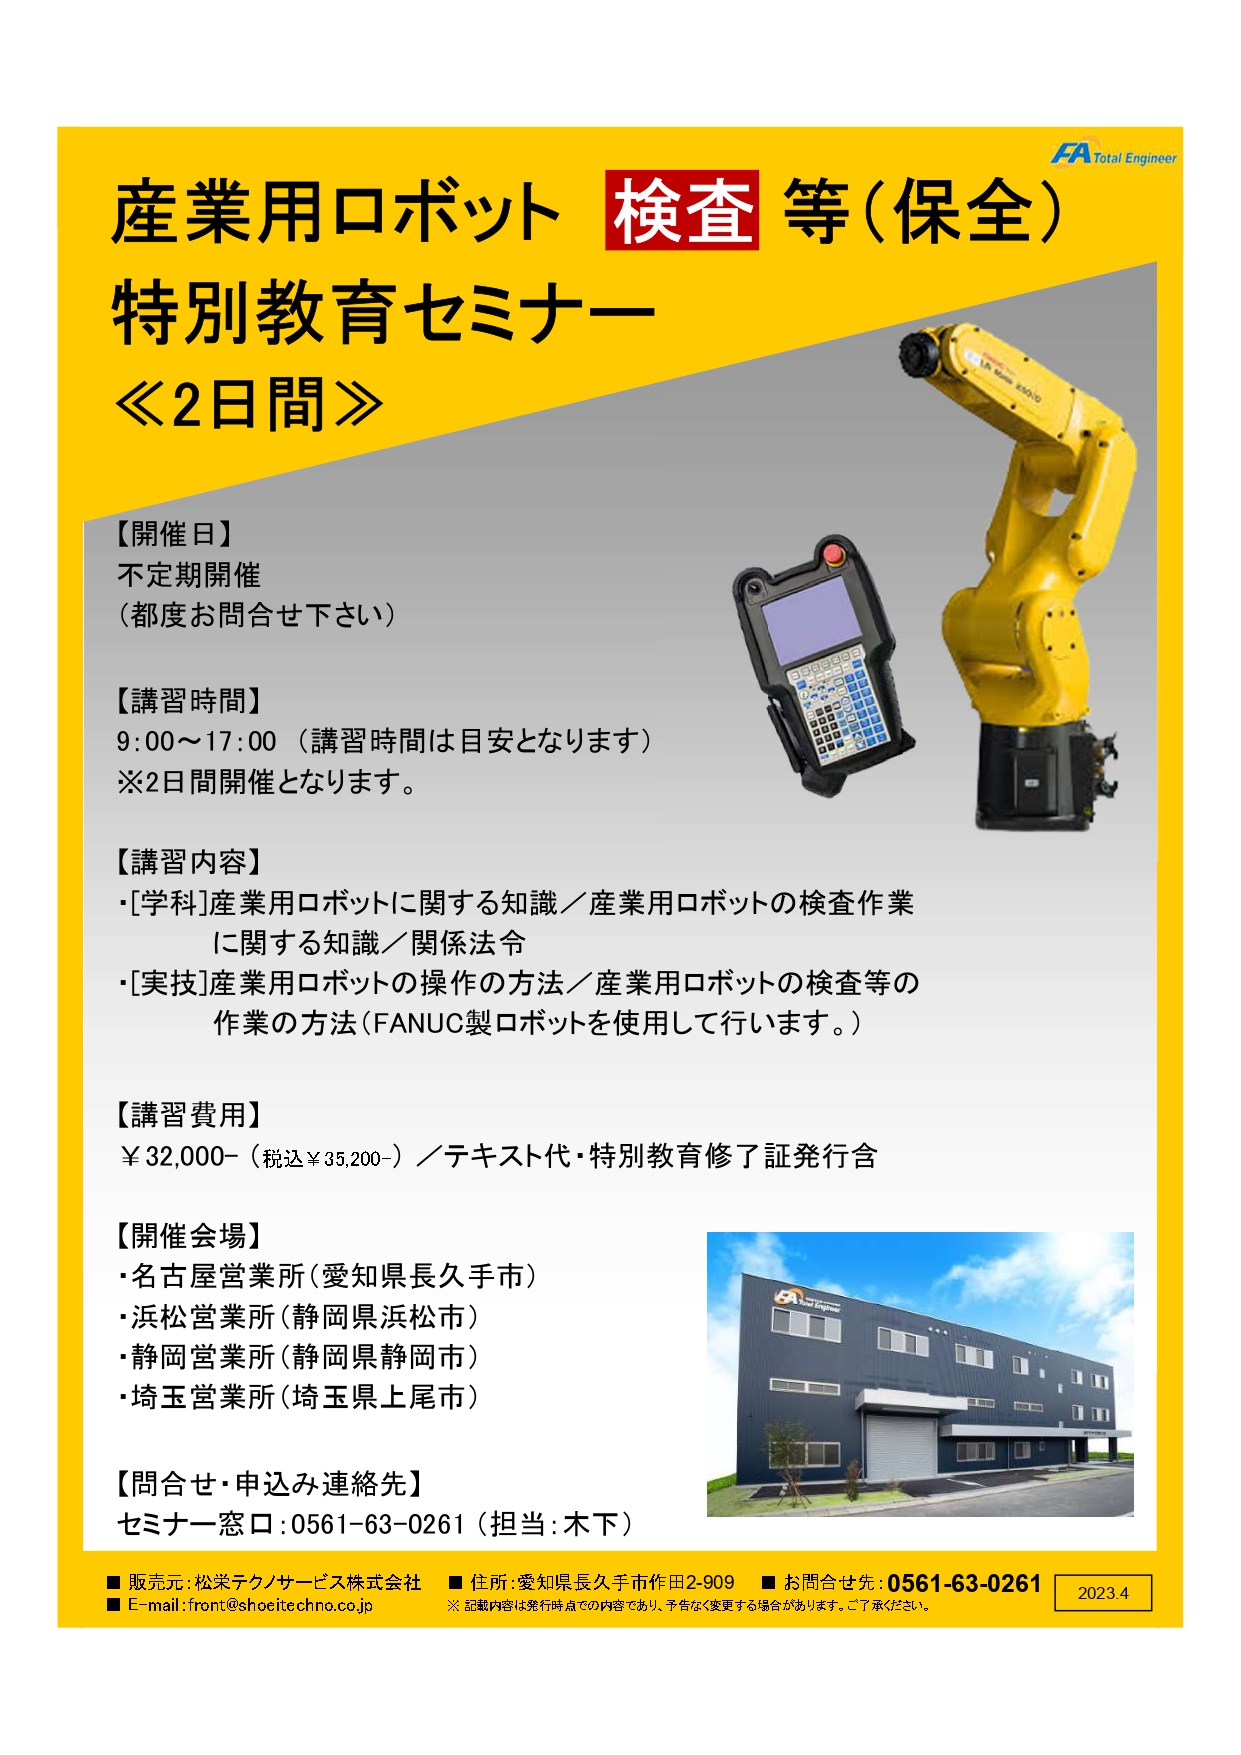 【受付中】産業用ロボット特別教育検査等（保全）開催のお知らせ